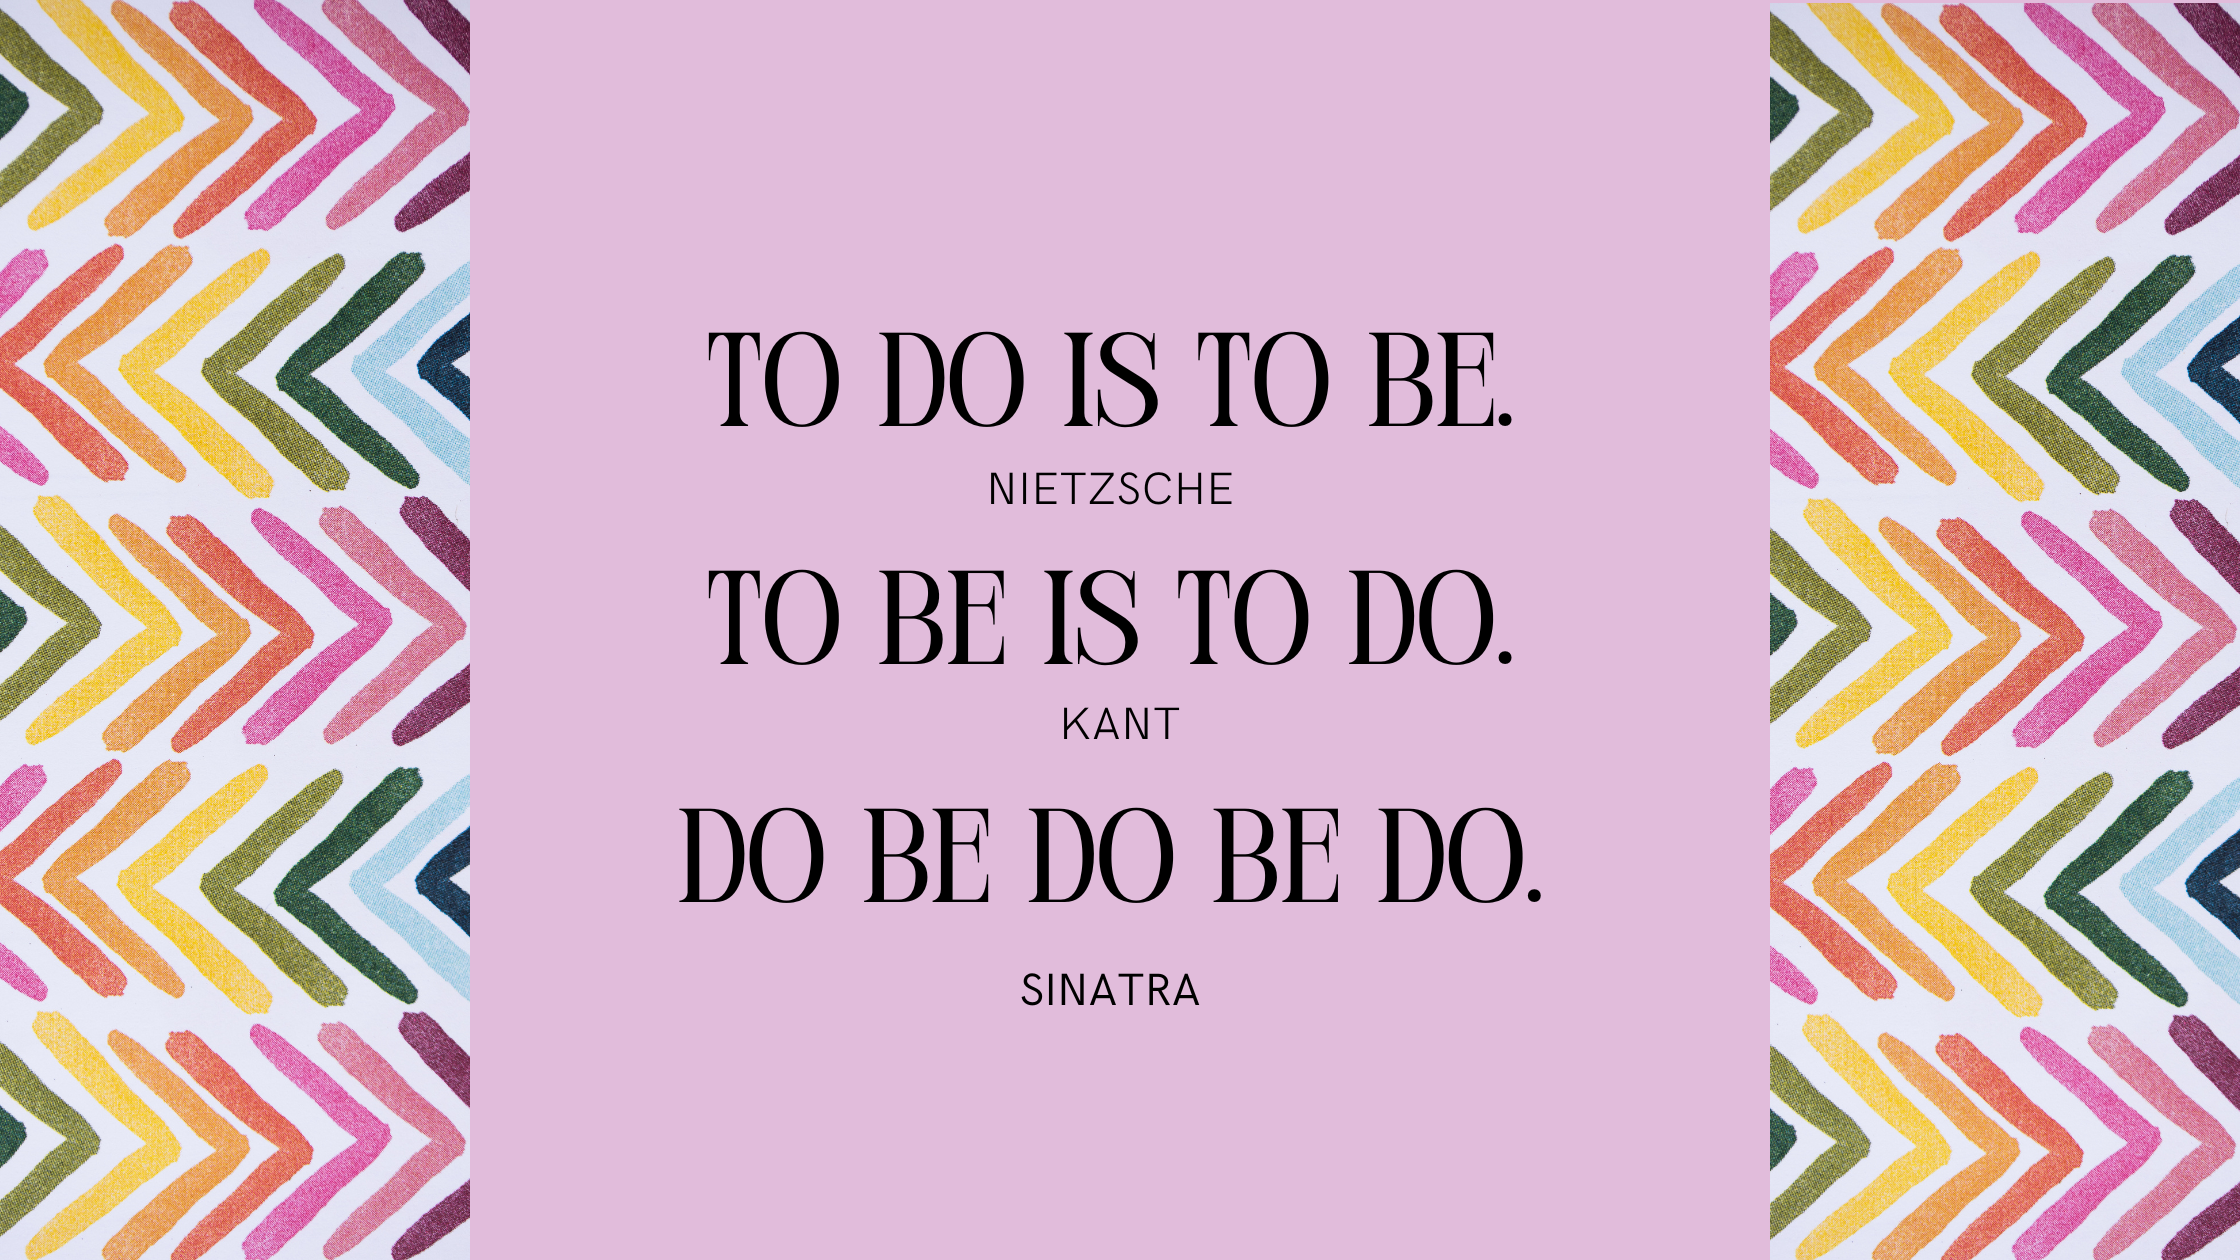 To Do Is To Be. To Be Is to Do. do be do be do.